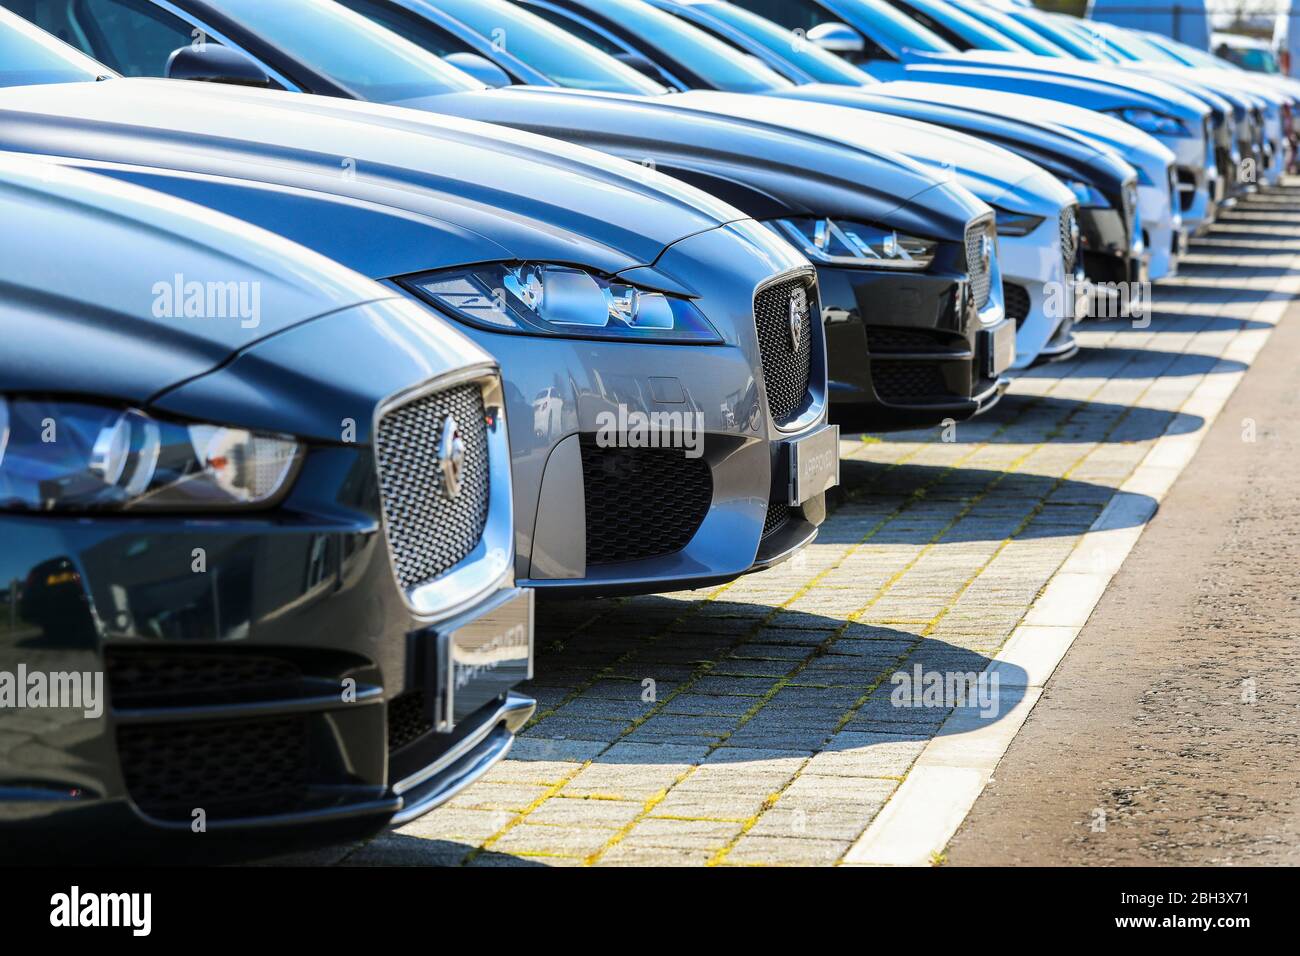 Véhicules automobiles Jaguar d'occasion à vendre dans une piste de garage, Ayr, Écosse Banque D'Images